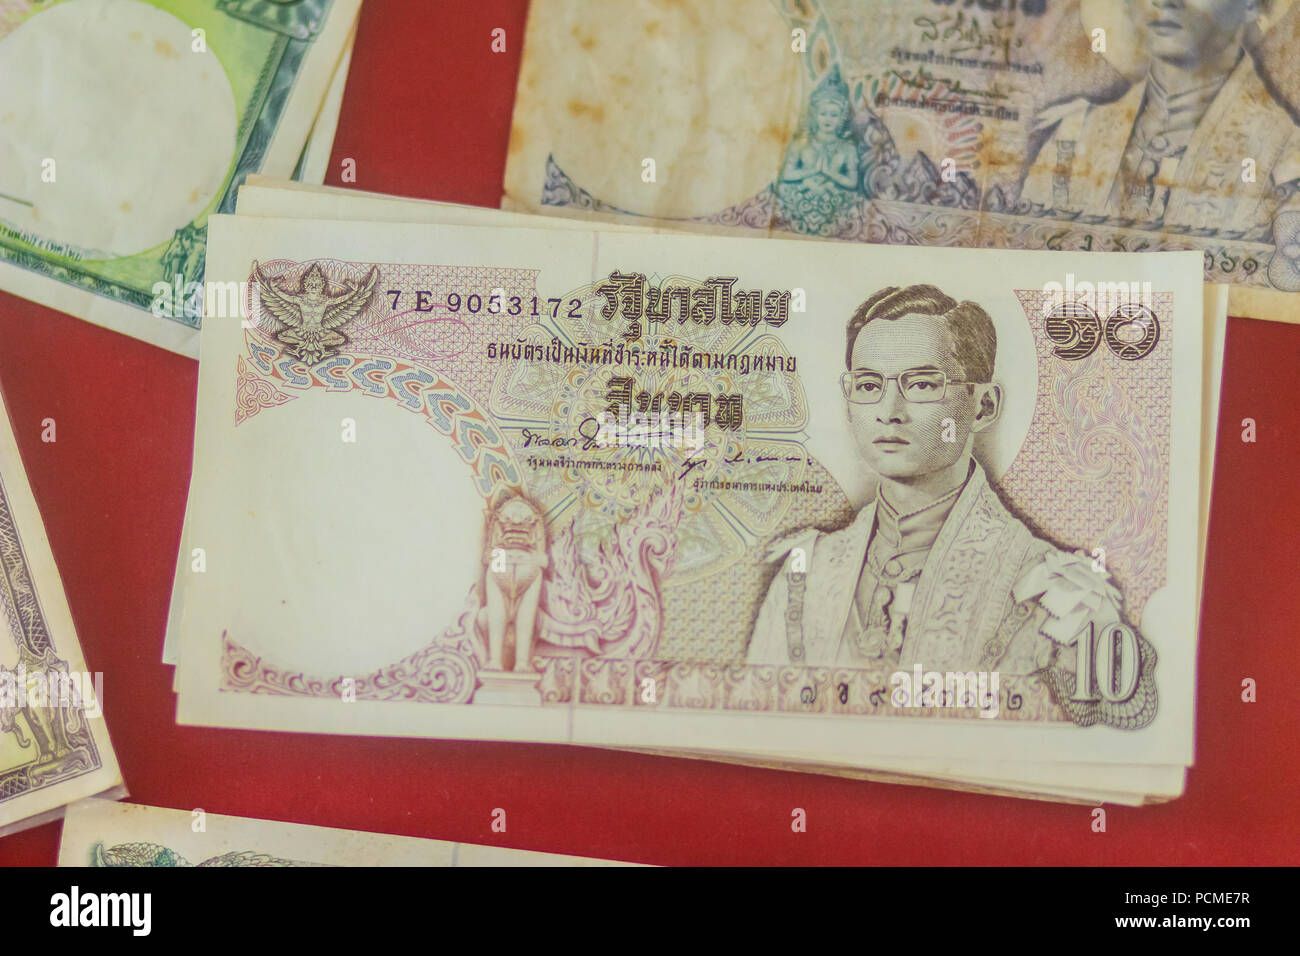 THAI SOUVENIR BANK NOTE 60 BAHT KING BHUMIBOL OF THAILAND RARE & COLLECTIBLE 